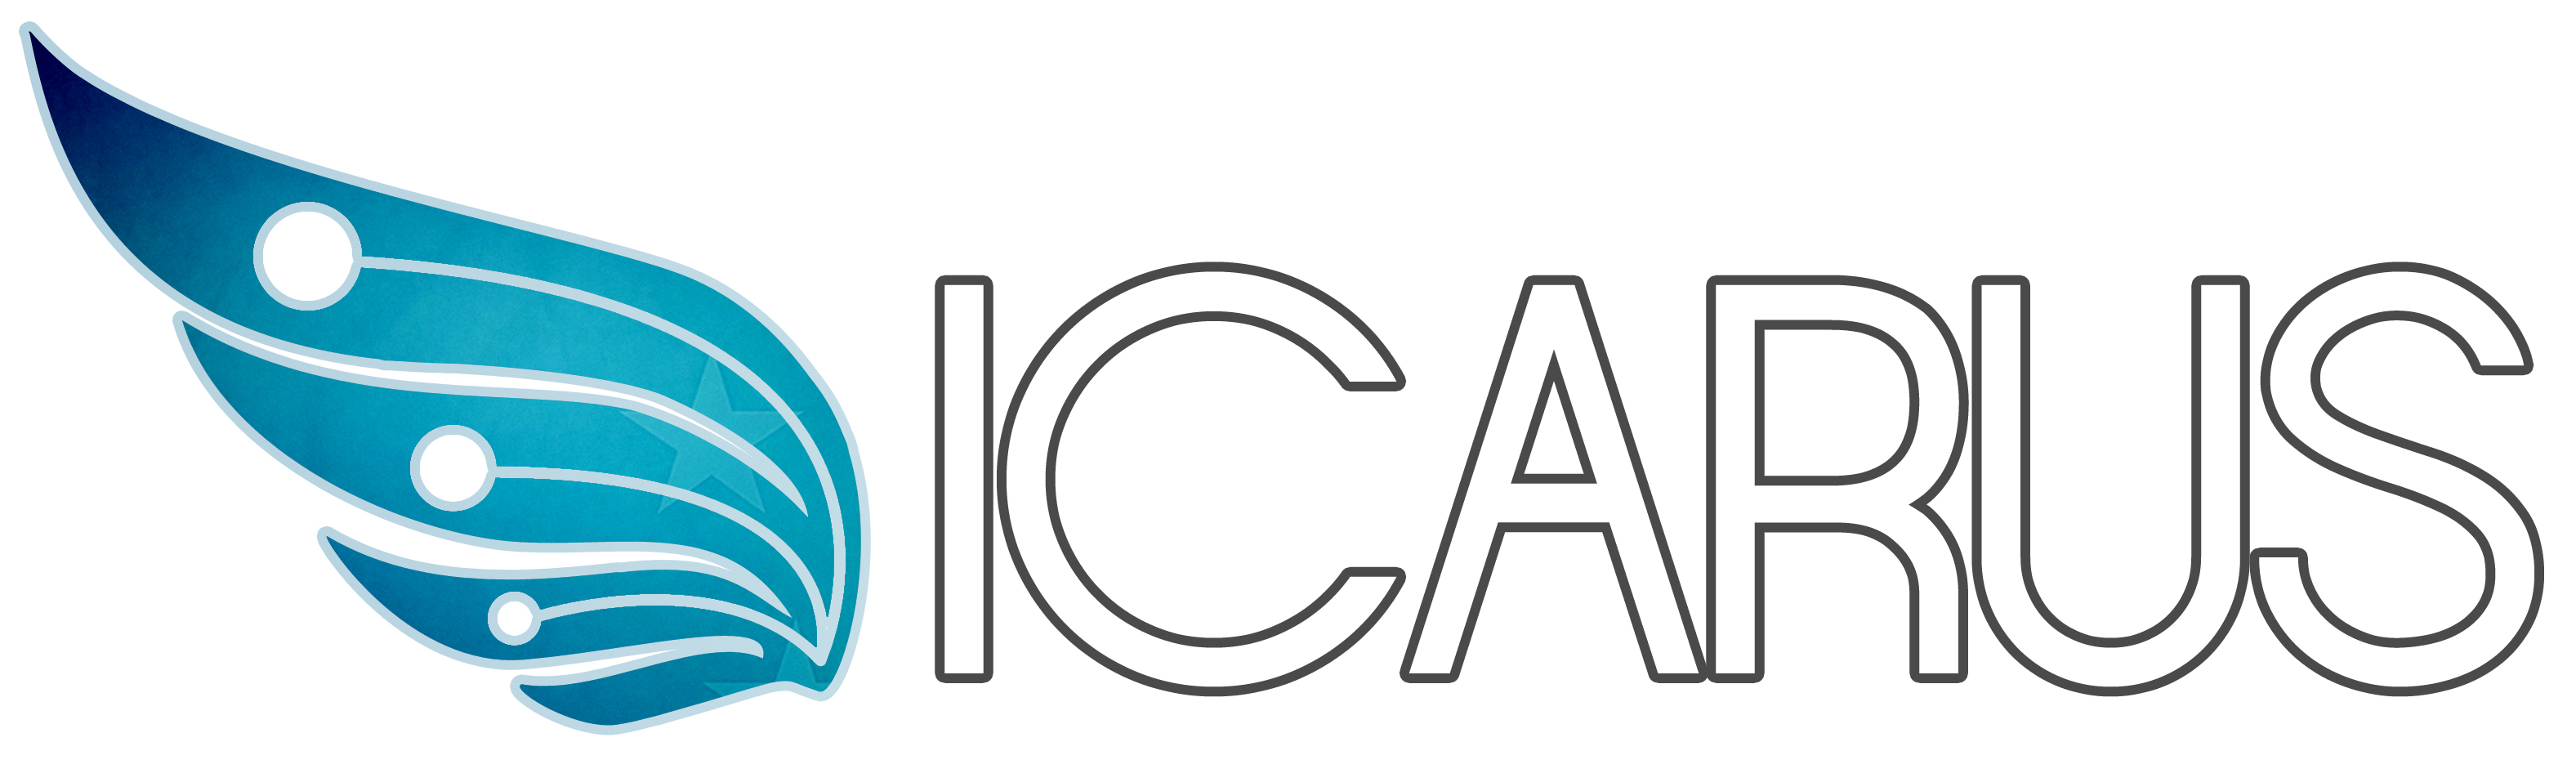 ICARUS logo